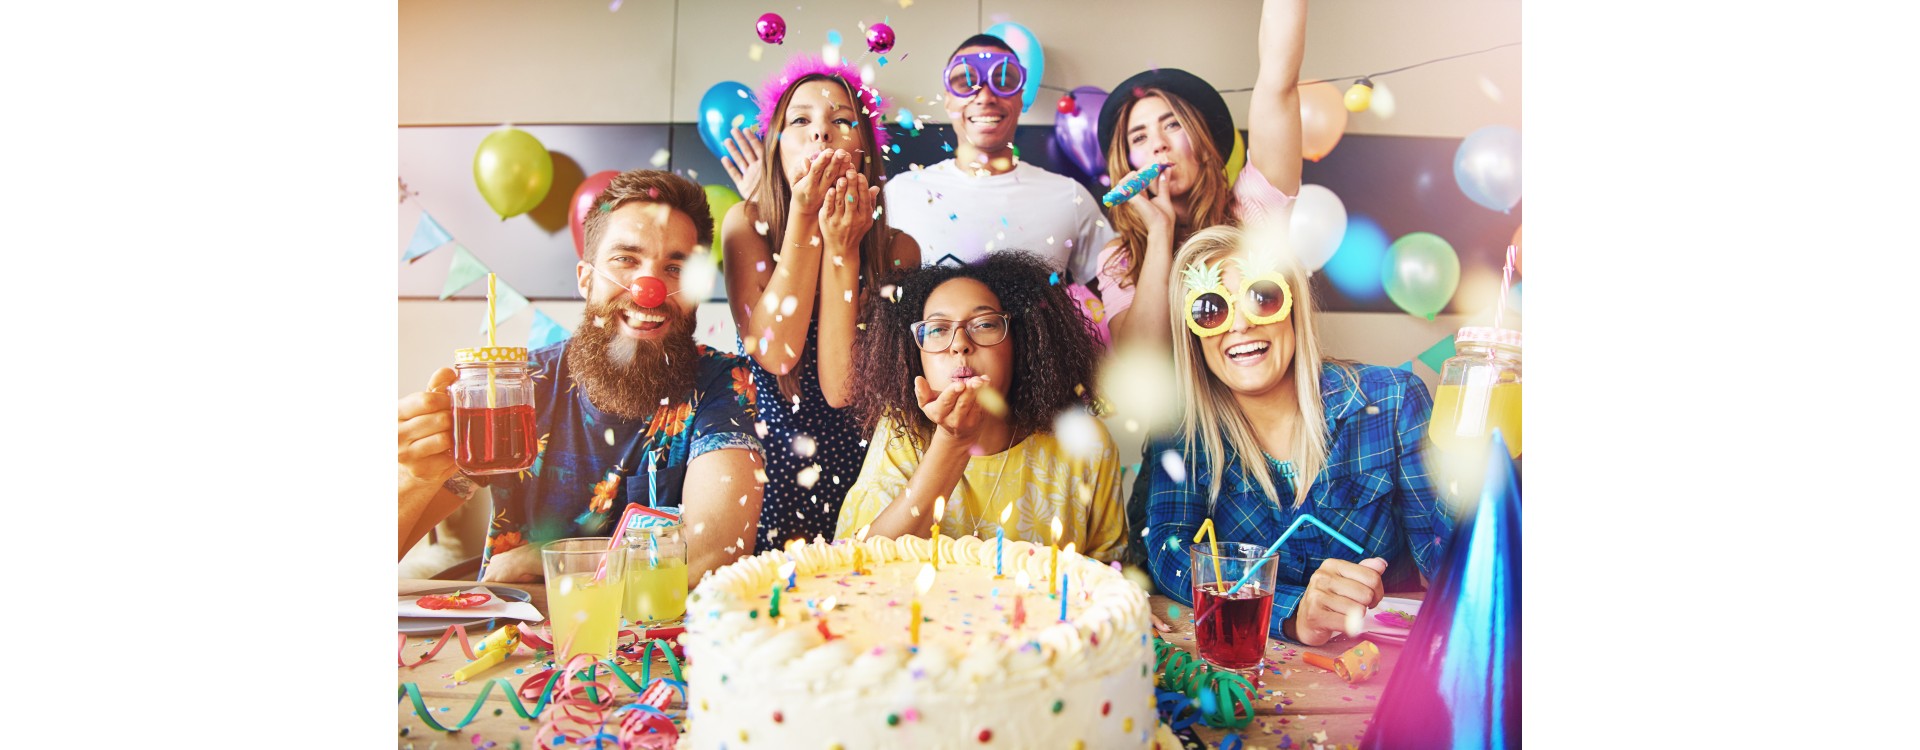 Déco anniversaire 30 ans : conseils et idées utiles pour organiser une fête  inoubliable